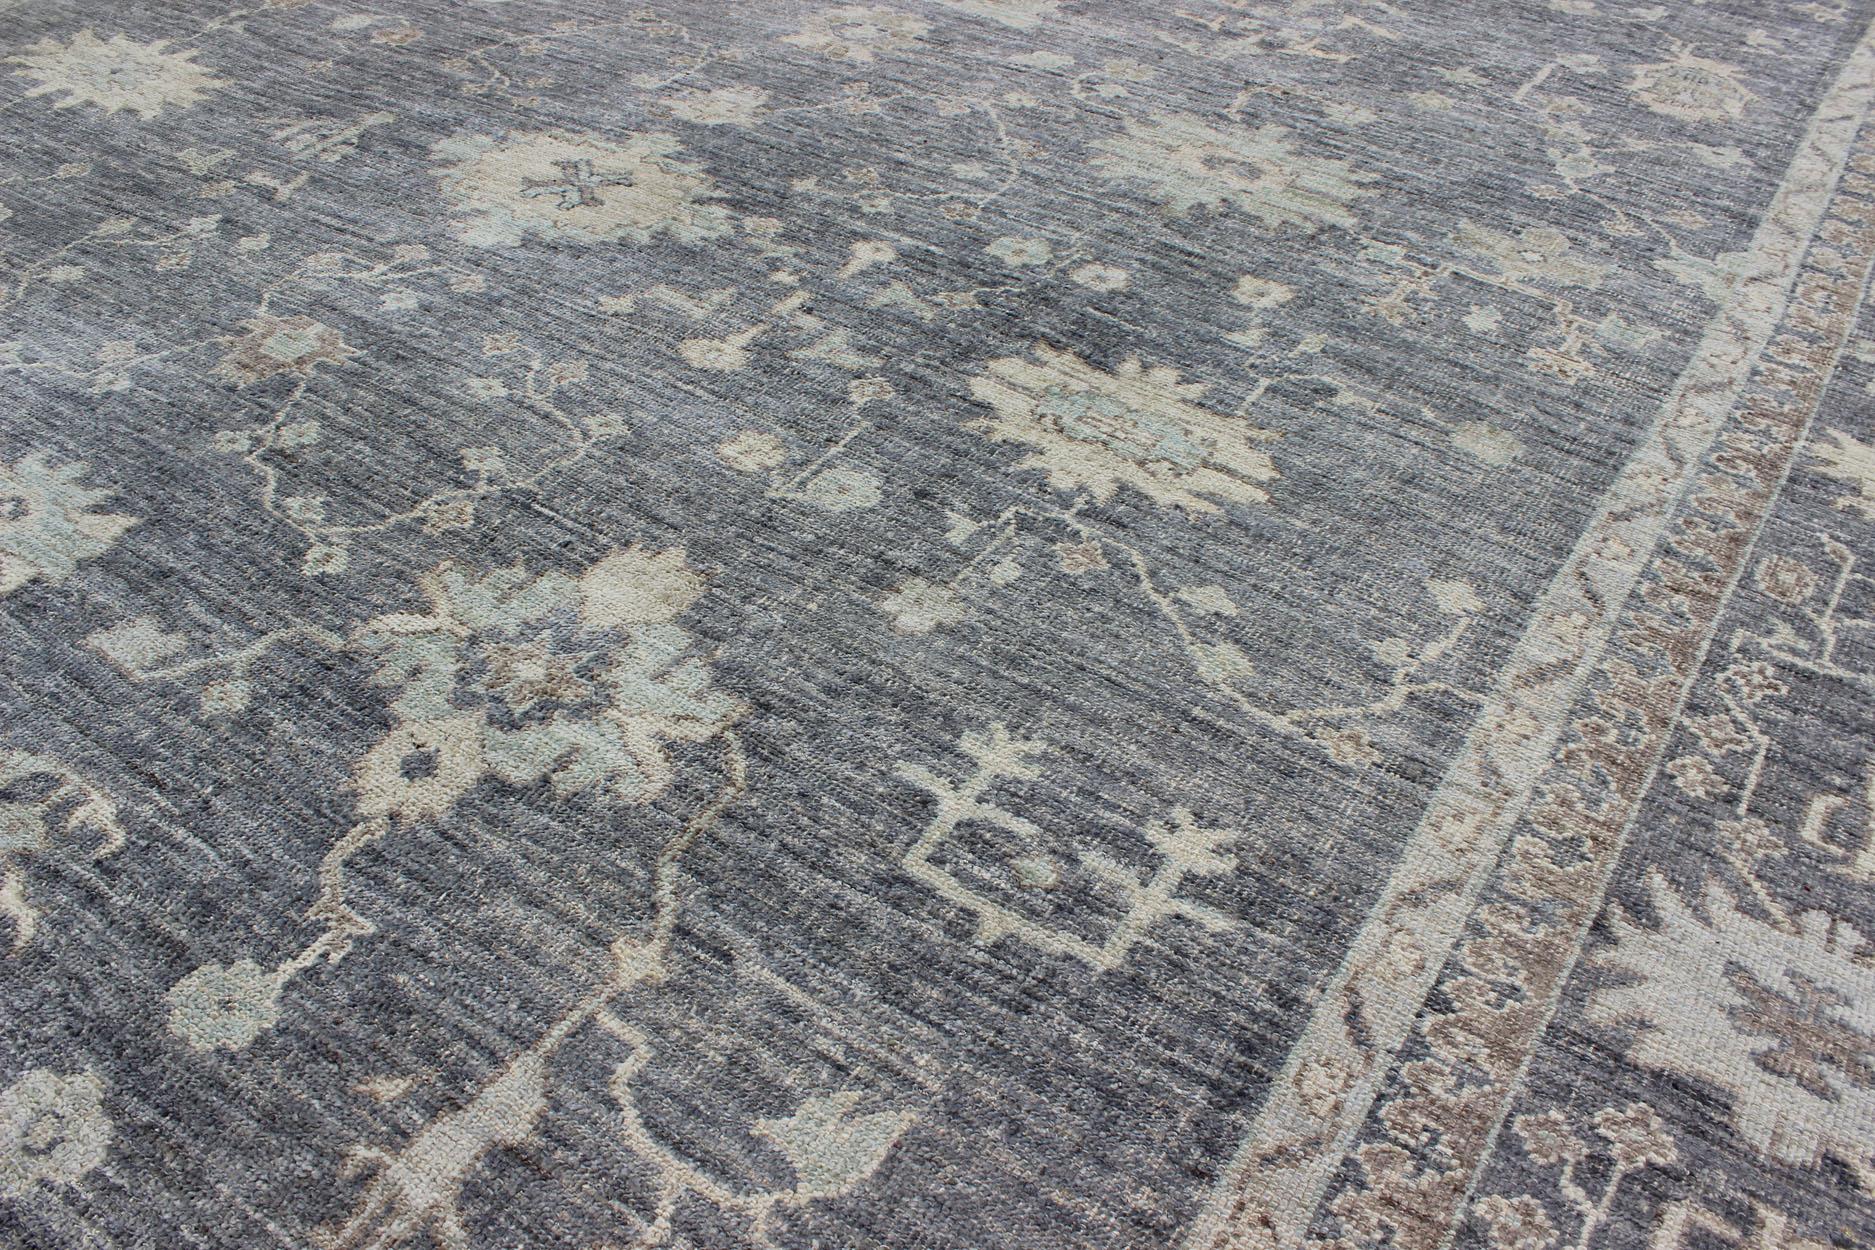 Türkischer Teppich Angora Keivan Woven Arts Oushak in Grau- und Cremetönen von Keivan Woven Arts. Keivan Woven Arts/ Teppich AN-126253, Herkunftsland / Art: Türkei / Angora Oushak.
Maße: 12'5 x 14'7 
Dieses Stück aus unserer Angora Collection'S ist